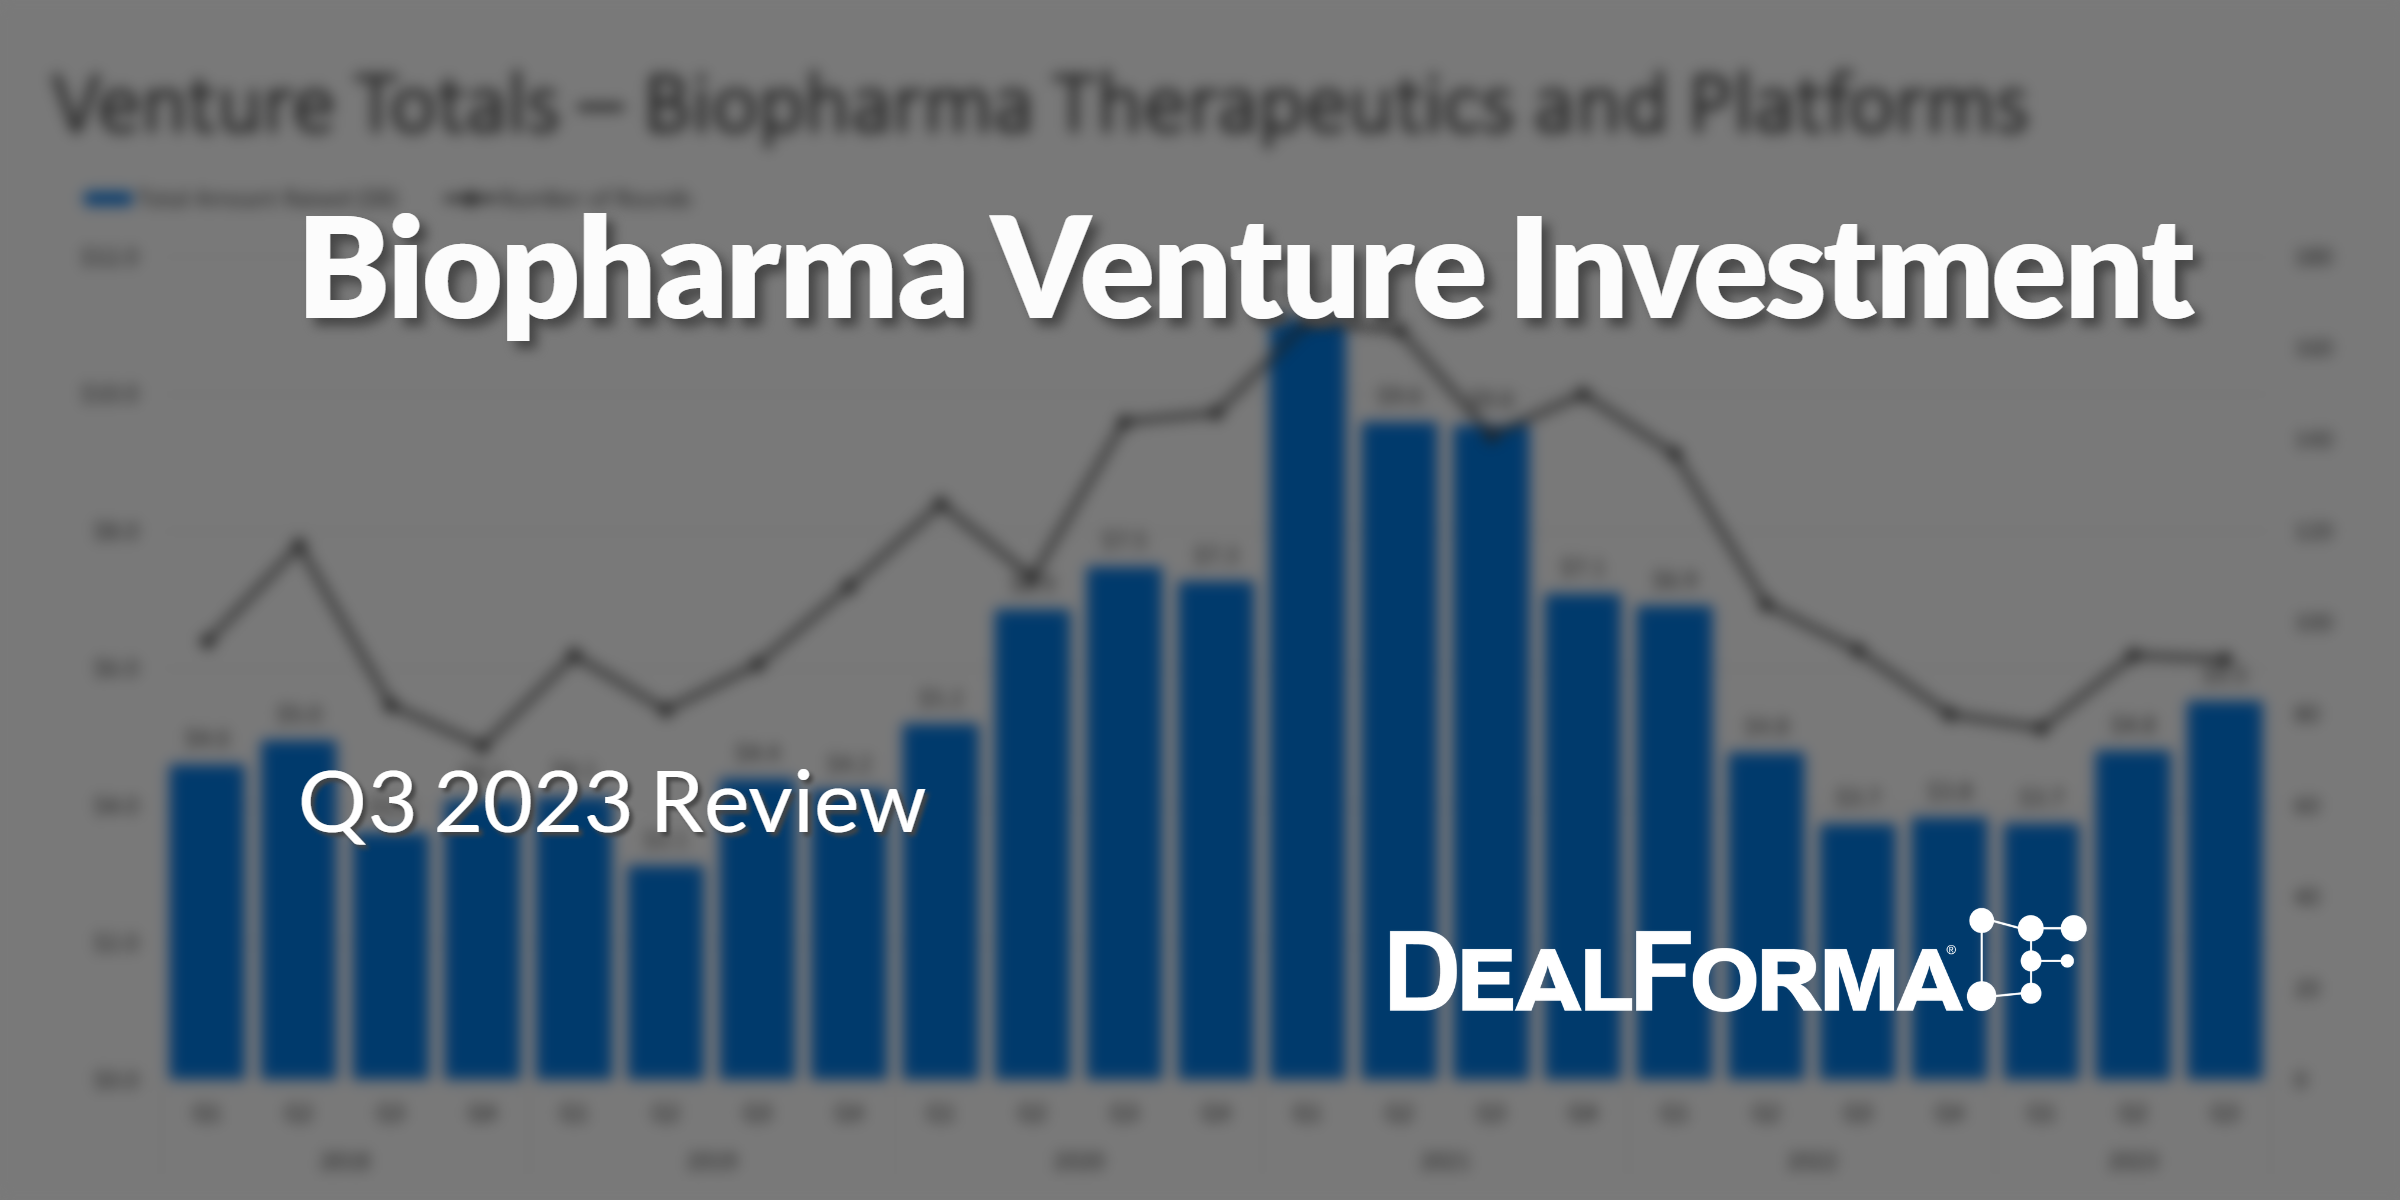 Biopharma Venture Investment Through Q3 2023 - DealForma